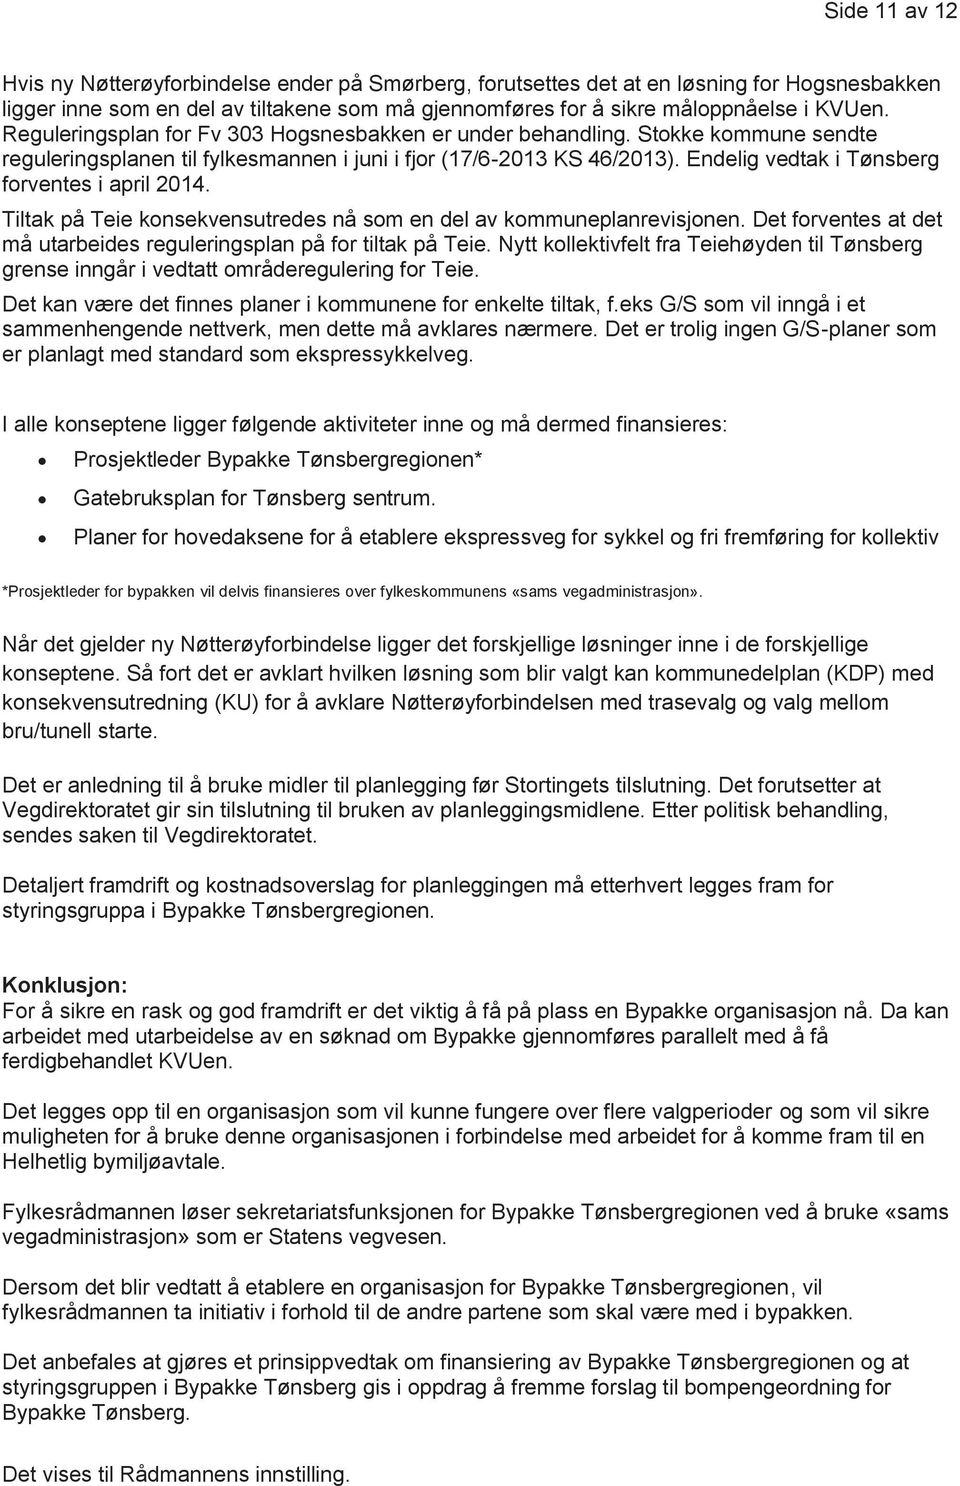 Endelig vedtak i Tønsberg forventes i april 2014. Tiltak på Teie konsekvensutredes nå som en del av kommuneplanrevisjonen. Det forventes at det må utarbeides reguleringsplan på for tiltak på Teie.